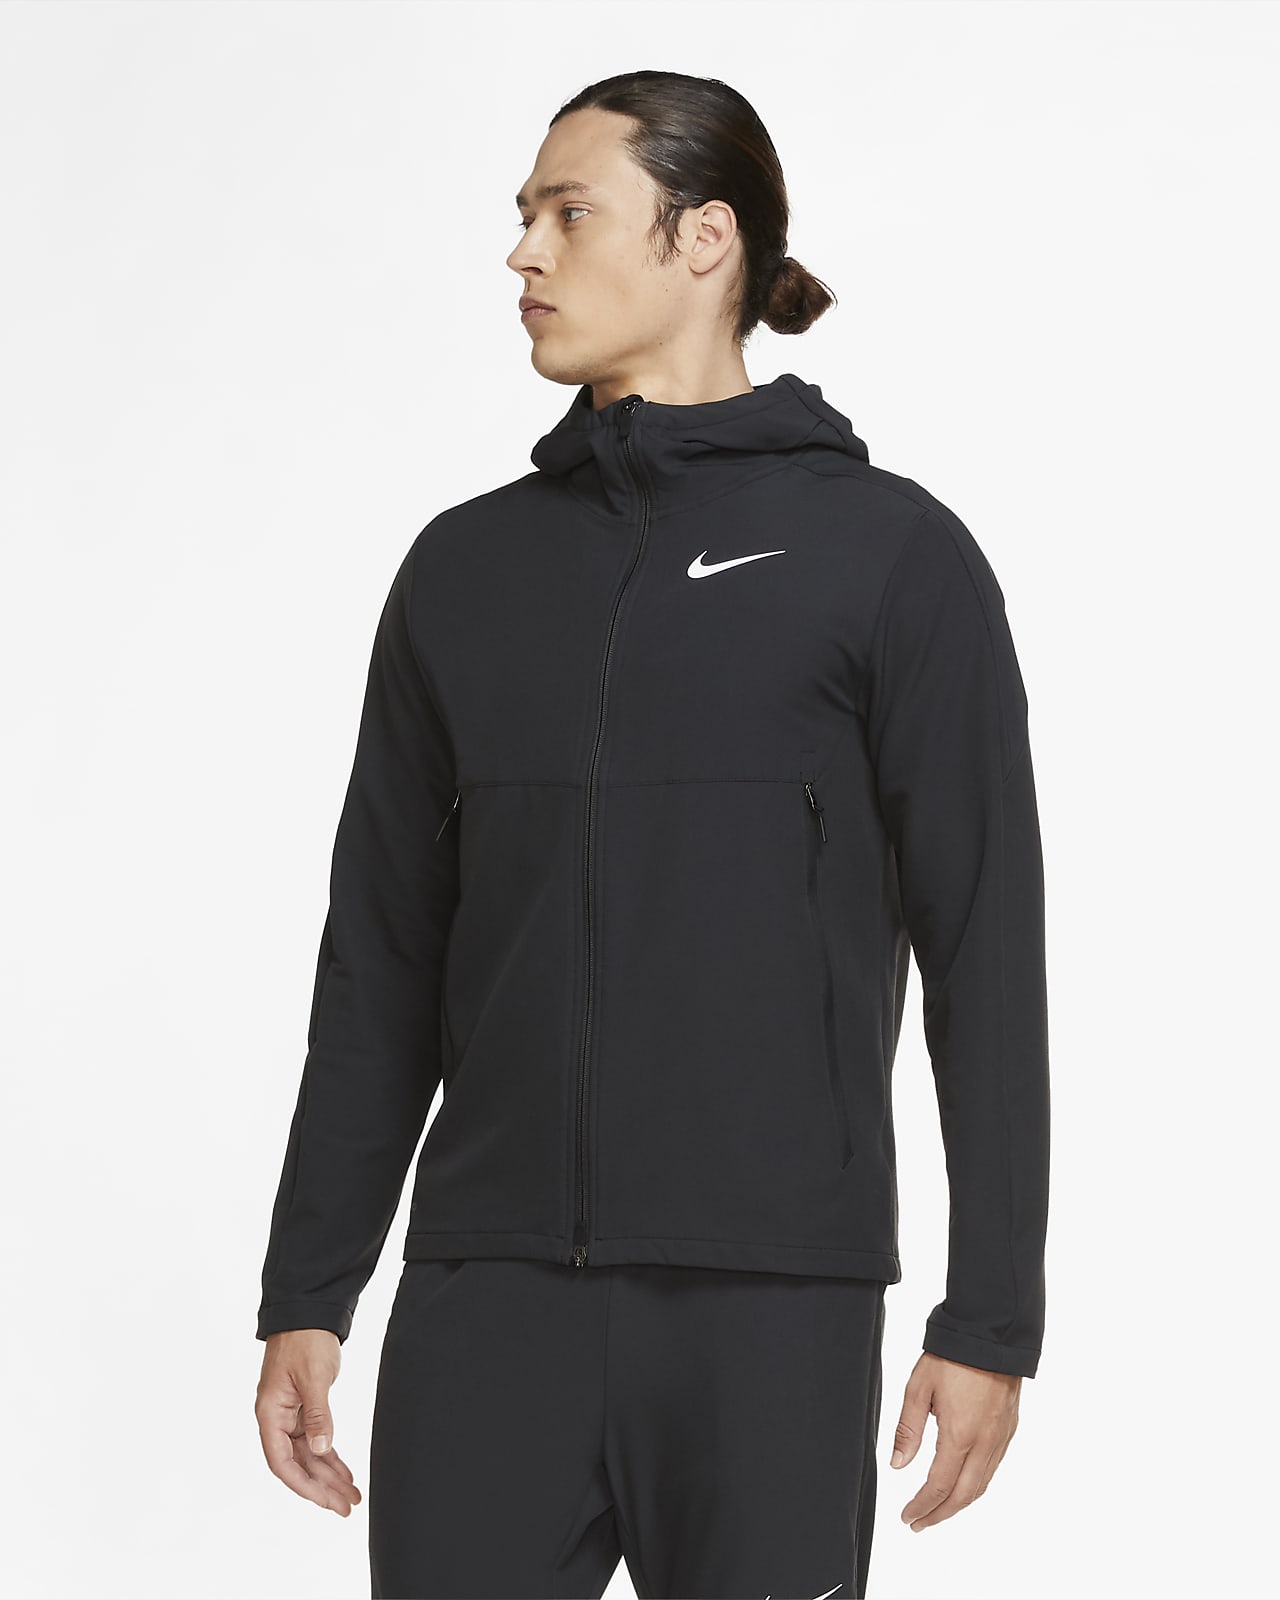 Nike Men's Winterised Woven Training Jacket. Nike EG